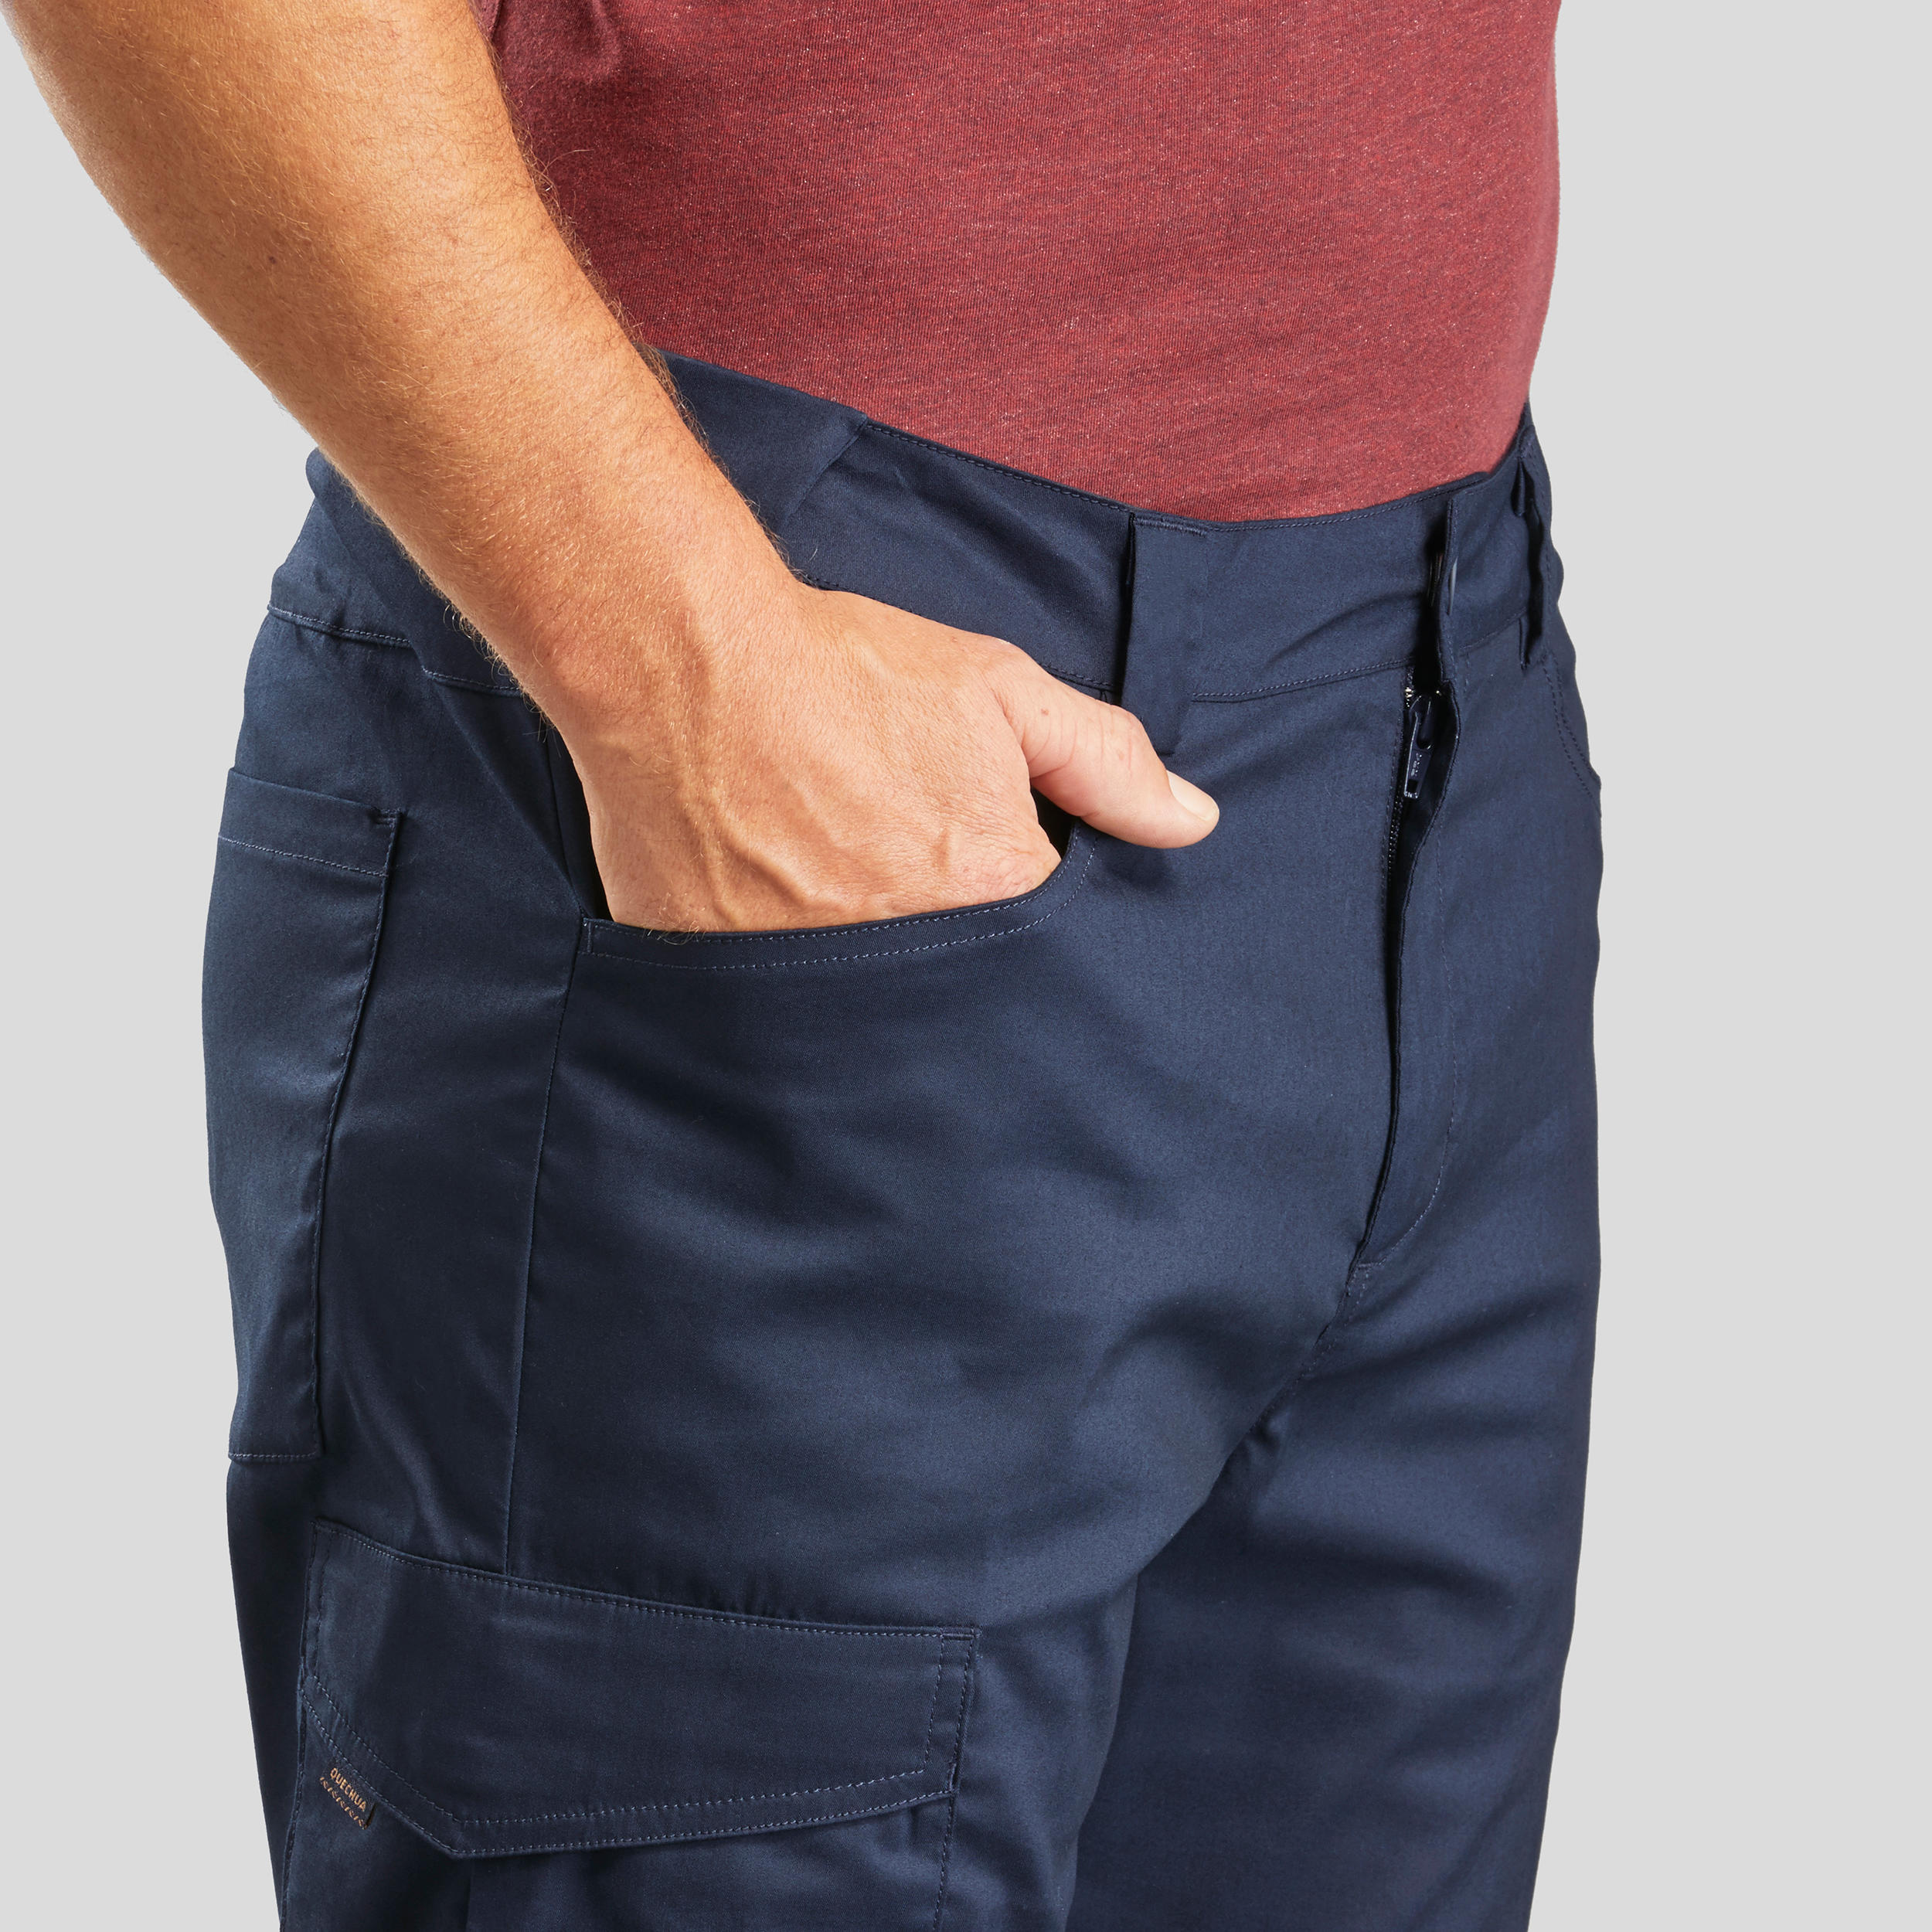 Hiking Pants Arpenaz 100 Men Trousers Beige  Now Buy Online In India On  DecathlonIn